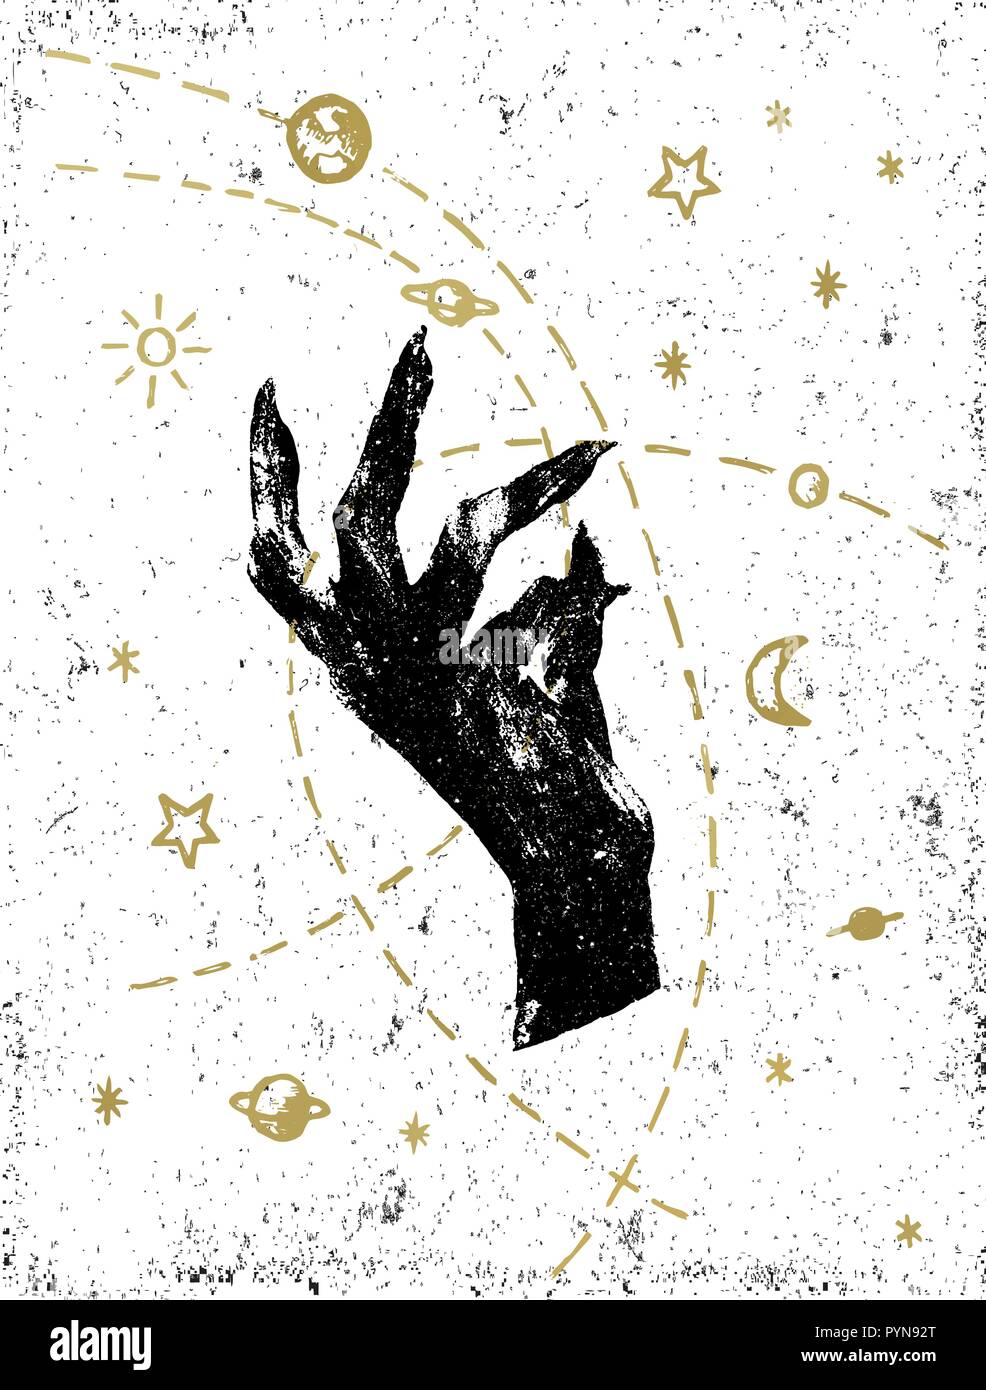 Der schwarzen Hexe hand mit symbolischen Kosmos Abbildung auf weiße strukturierte Hintergrund. Tattoo, Aufkleber, Patch oder Poster print Design. Stock Vektor